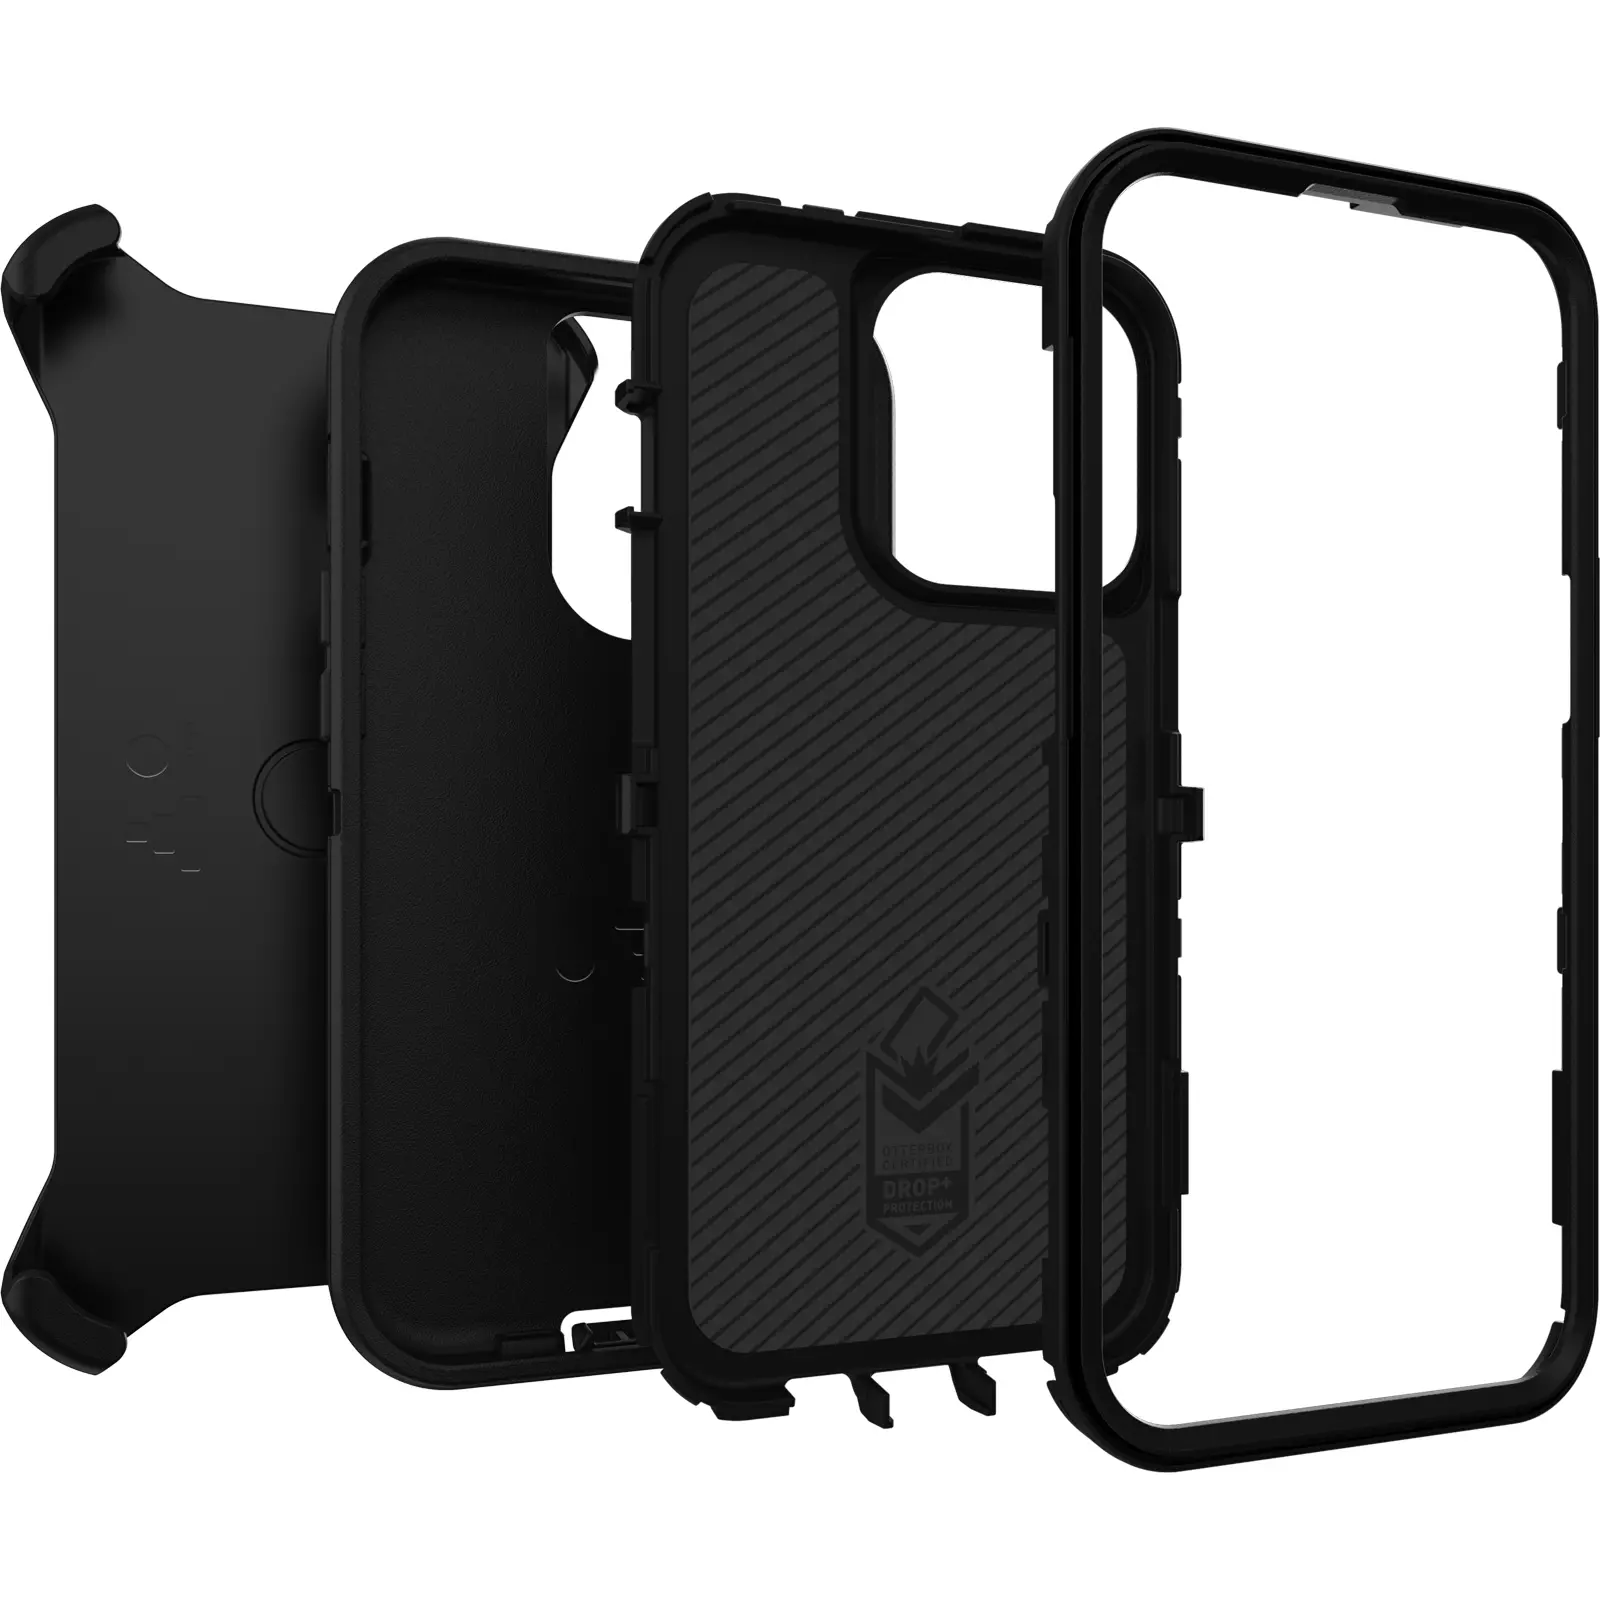 เคส OtterBox รุ่น Defender - iPhone 13 Pro - สีดำ